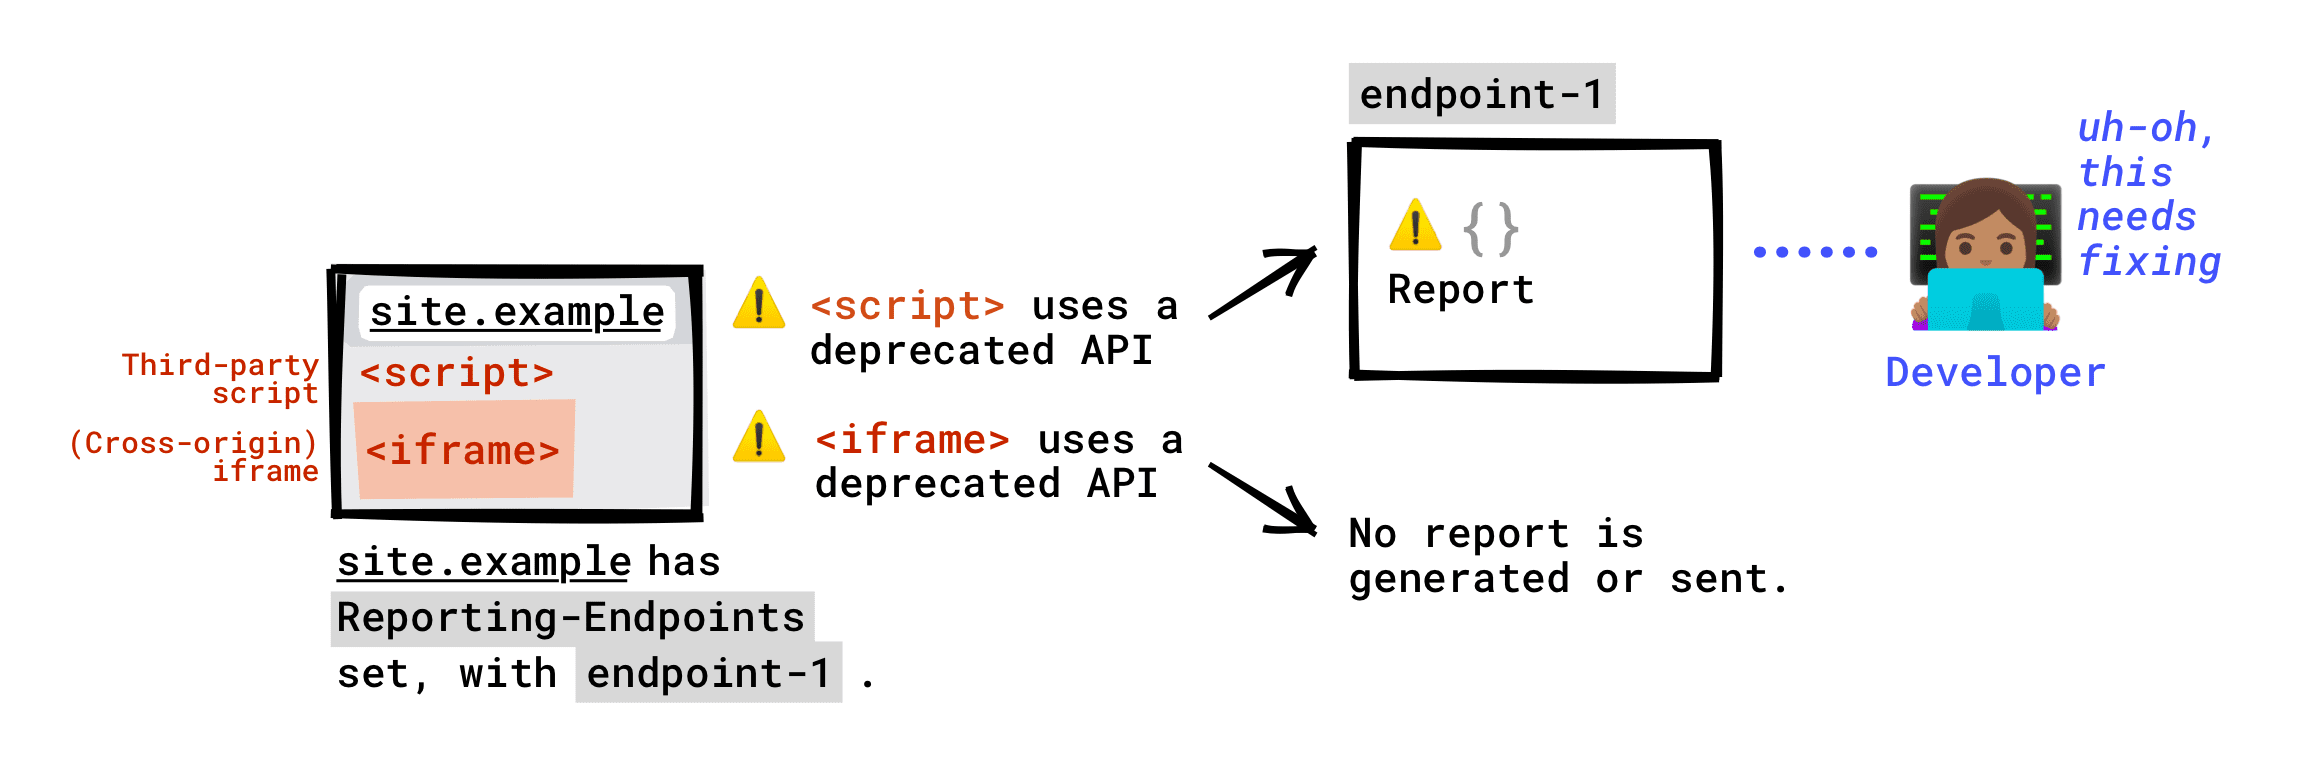 Als de header Reporting-Endpoints op uw pagina is ingesteld: de verouderde API die wordt aangeroepen door scripts van derden die op uw pagina worden uitgevoerd, wordt aan uw eindpunt gerapporteerd. Verouderde API die wordt aangeroepen door een iframe dat is ingebed in uw pagina, wordt niet gerapporteerd aan uw eindpunt. Er wordt alleen een beëindigingsrapport gegenereerd als de iframe-server Reporting-Endpoints heeft ingesteld, en dit rapport wordt verzonden naar het eindpunt dat de iframe-server heeft ingesteld.